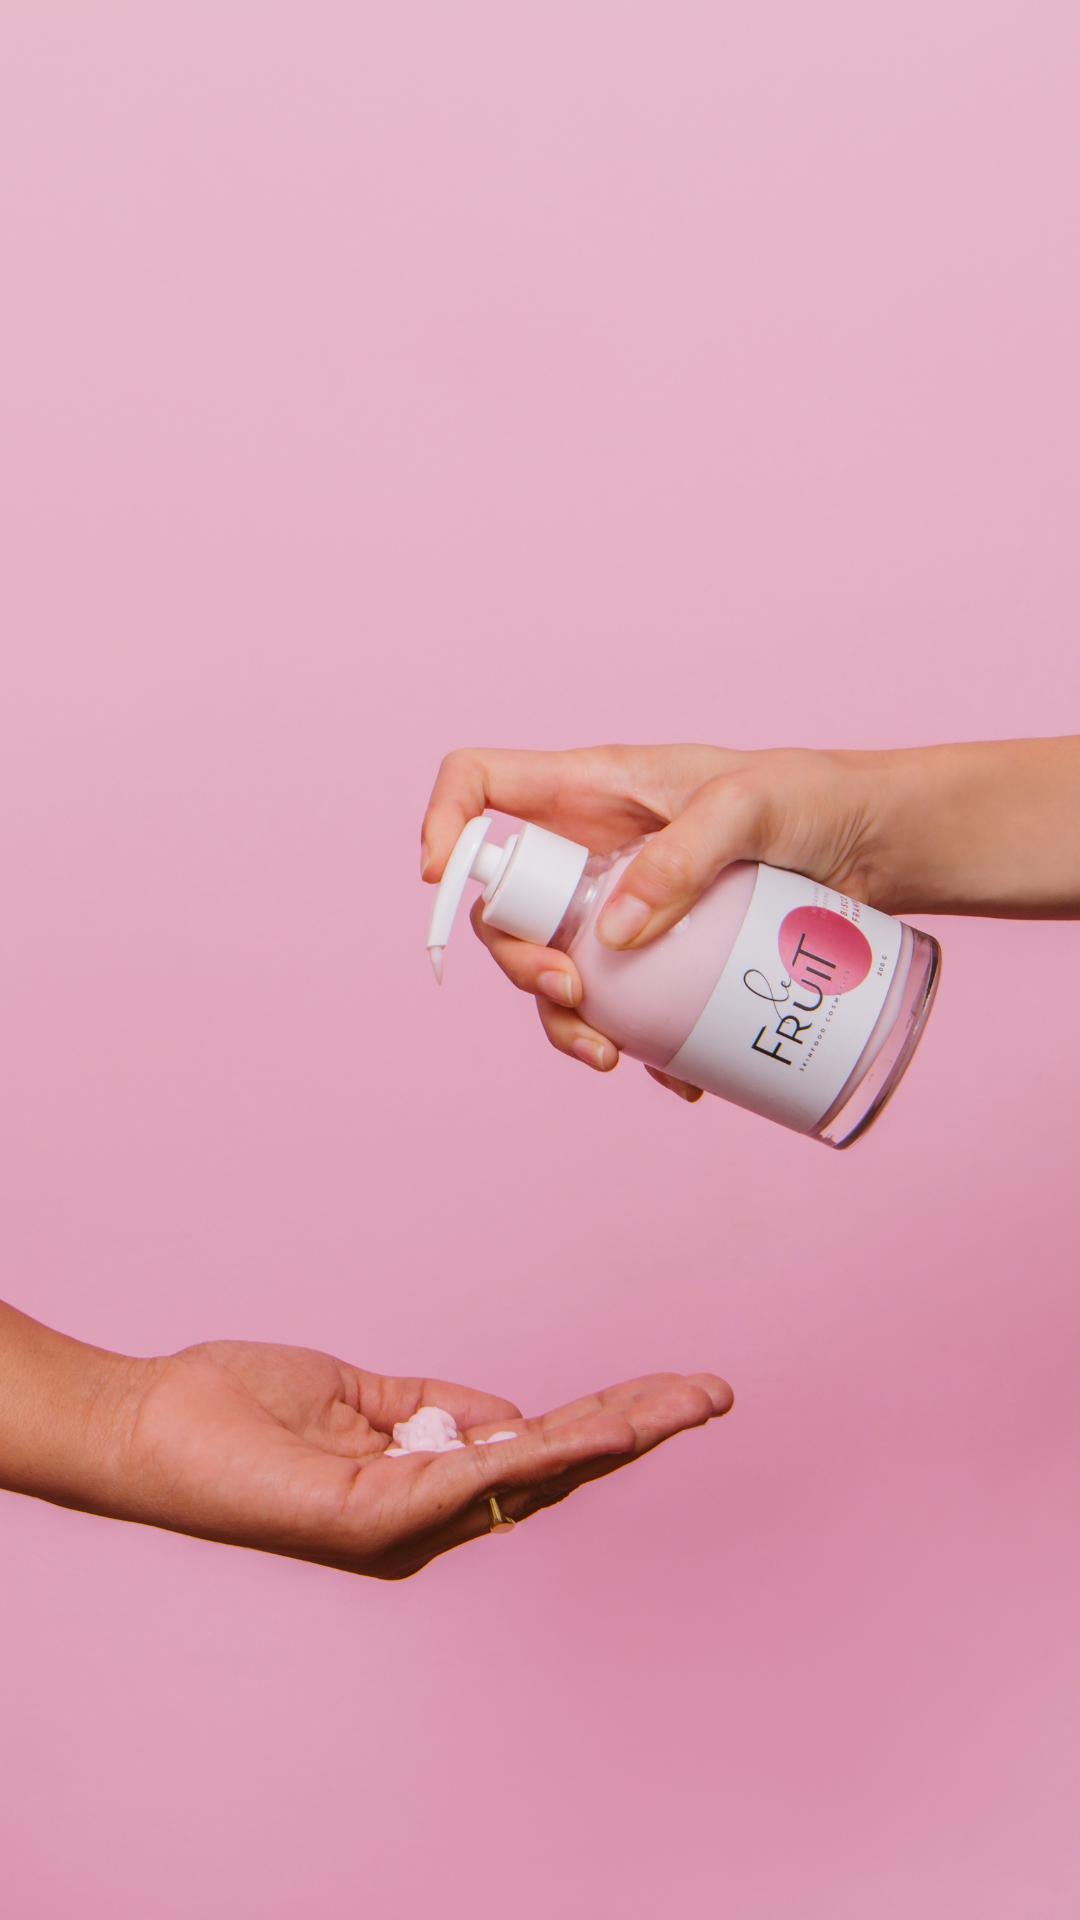 Sobre um fundo rosa, uma mão pressiona uma embalagem de vidro contendo hidratante contra outra mão, que está recebendo o creme.